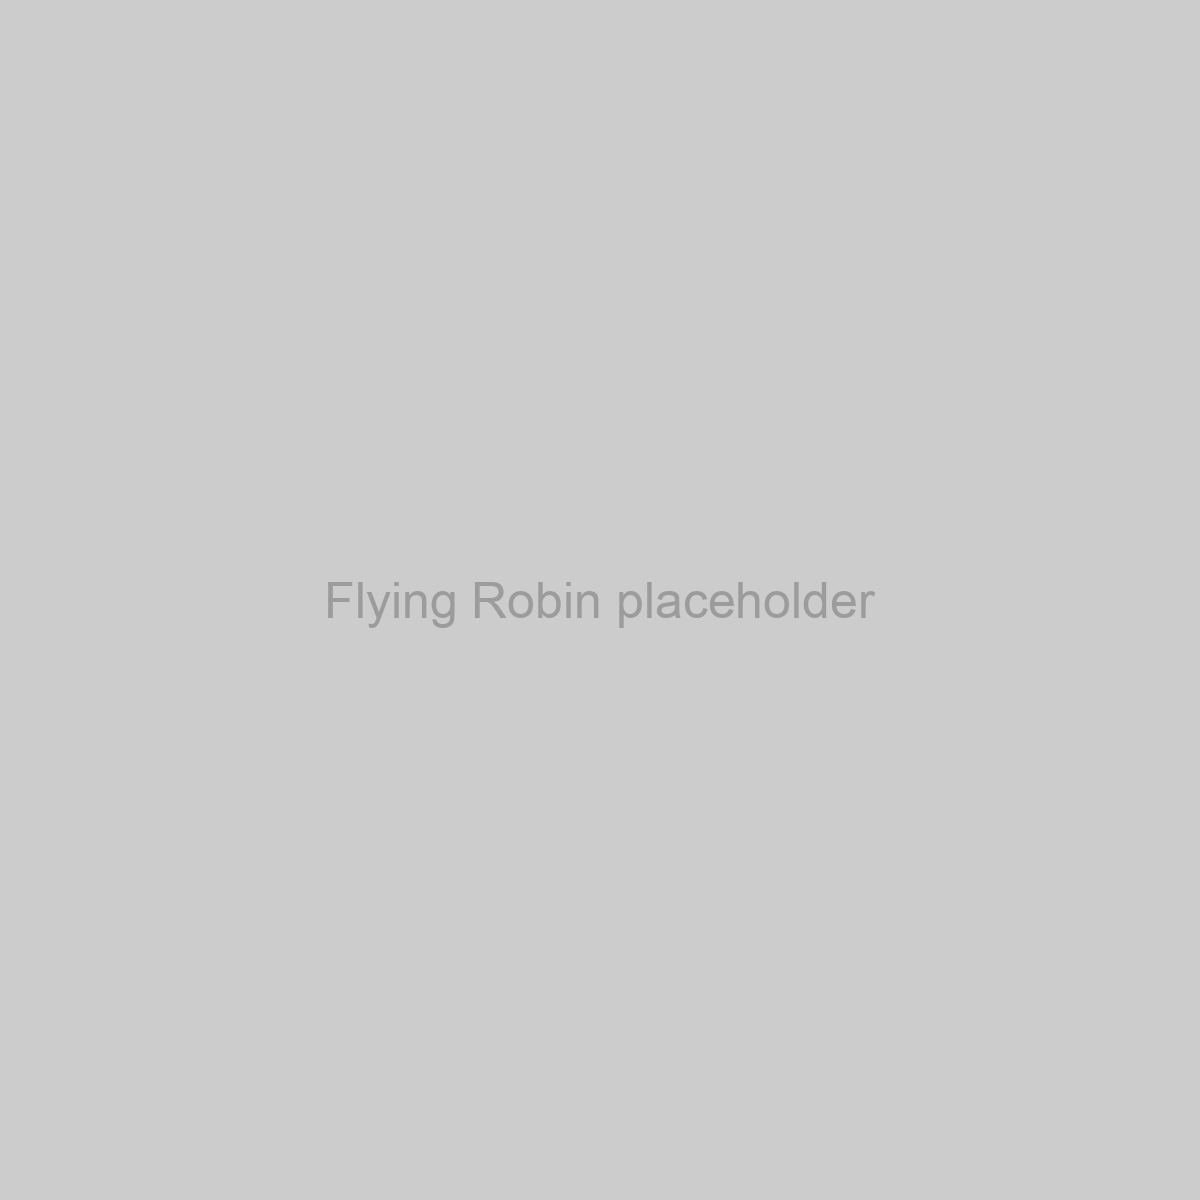 Flying Robin Placeholder Image